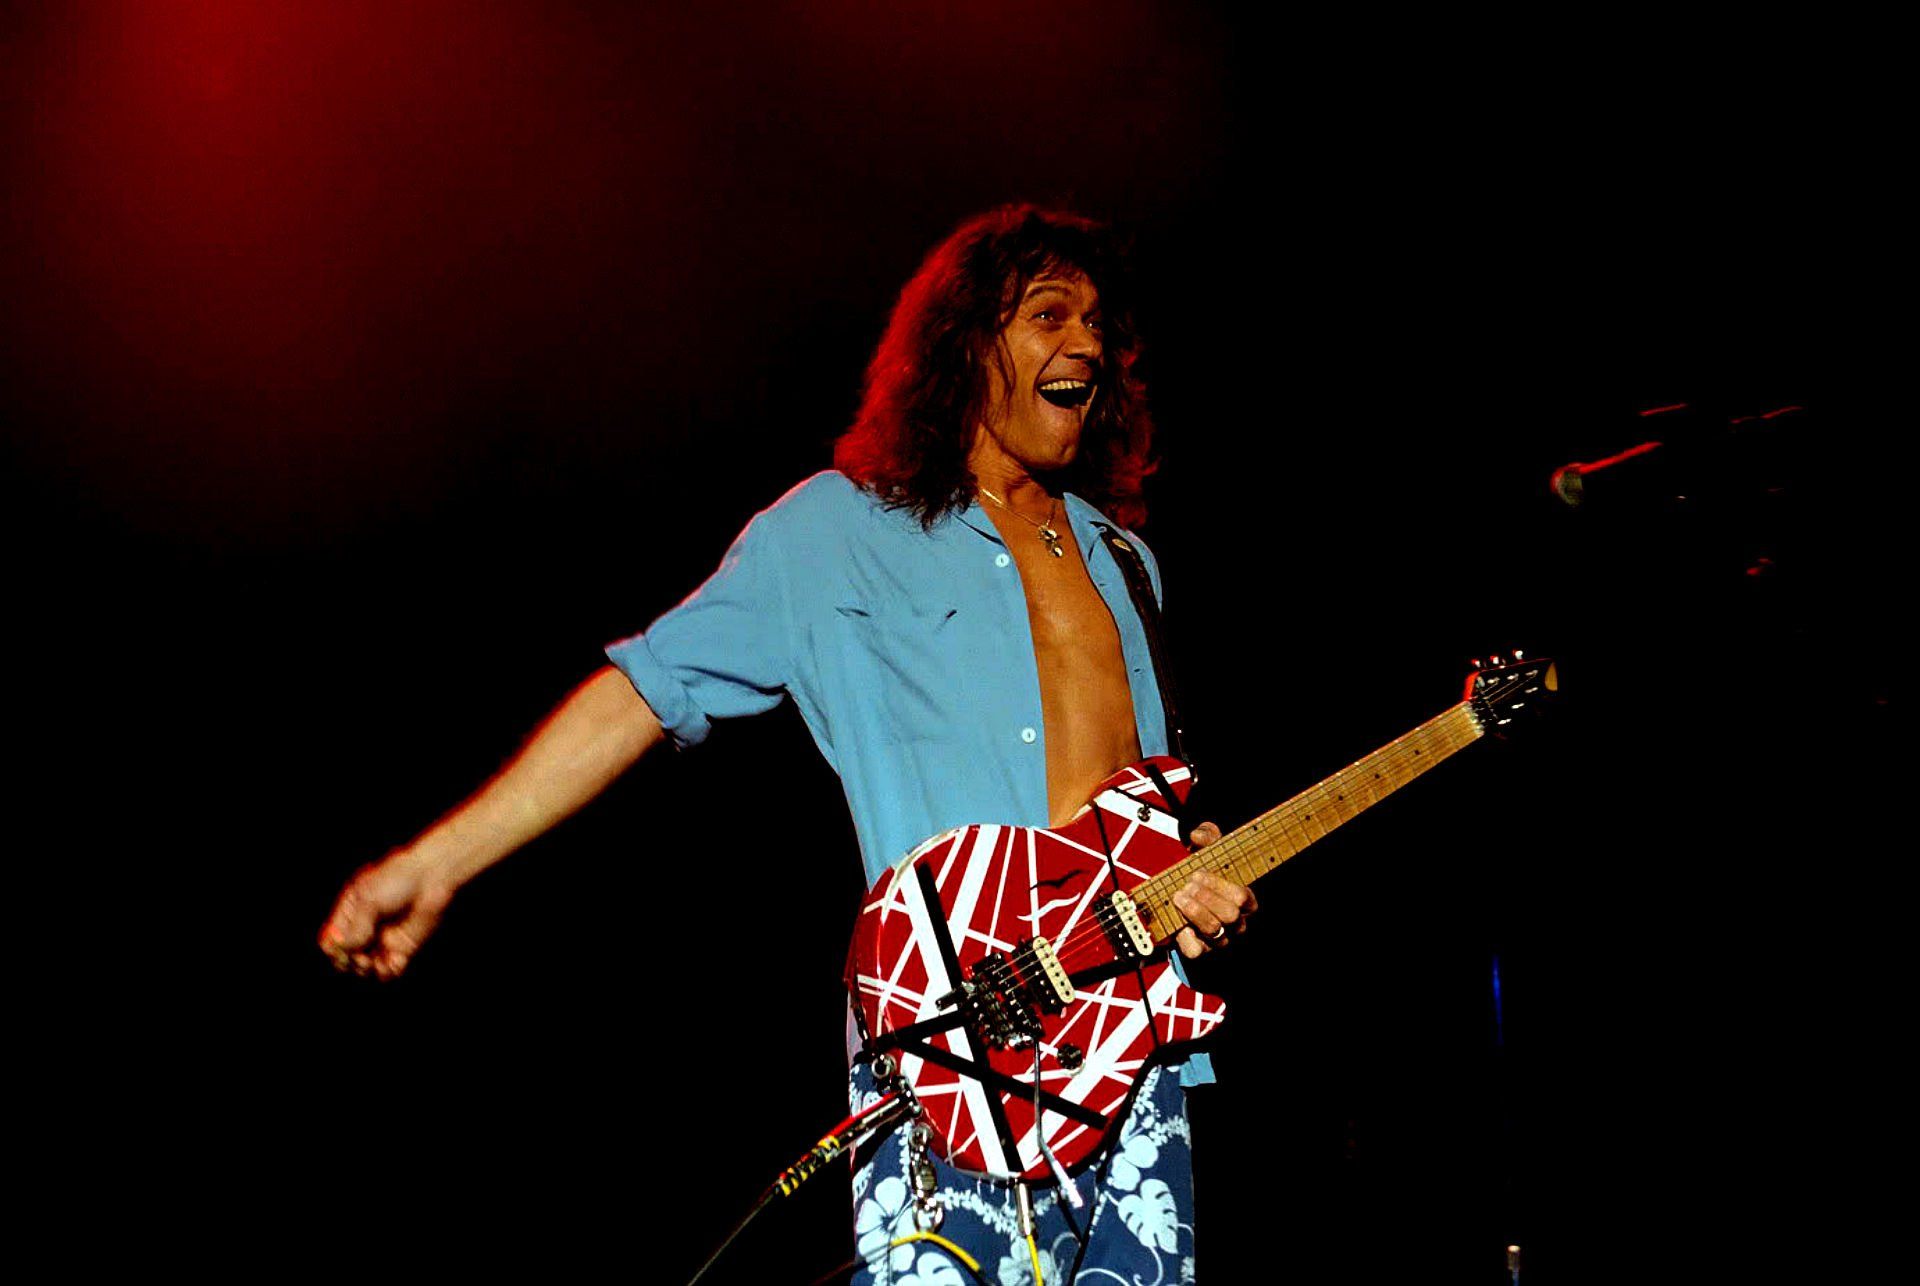 Eddie Van Halen Wallpaper. Freddie Mercury Wallpaper, Queen Freddie Mercury Wallpaper and Eddie Bauer Wallpaper